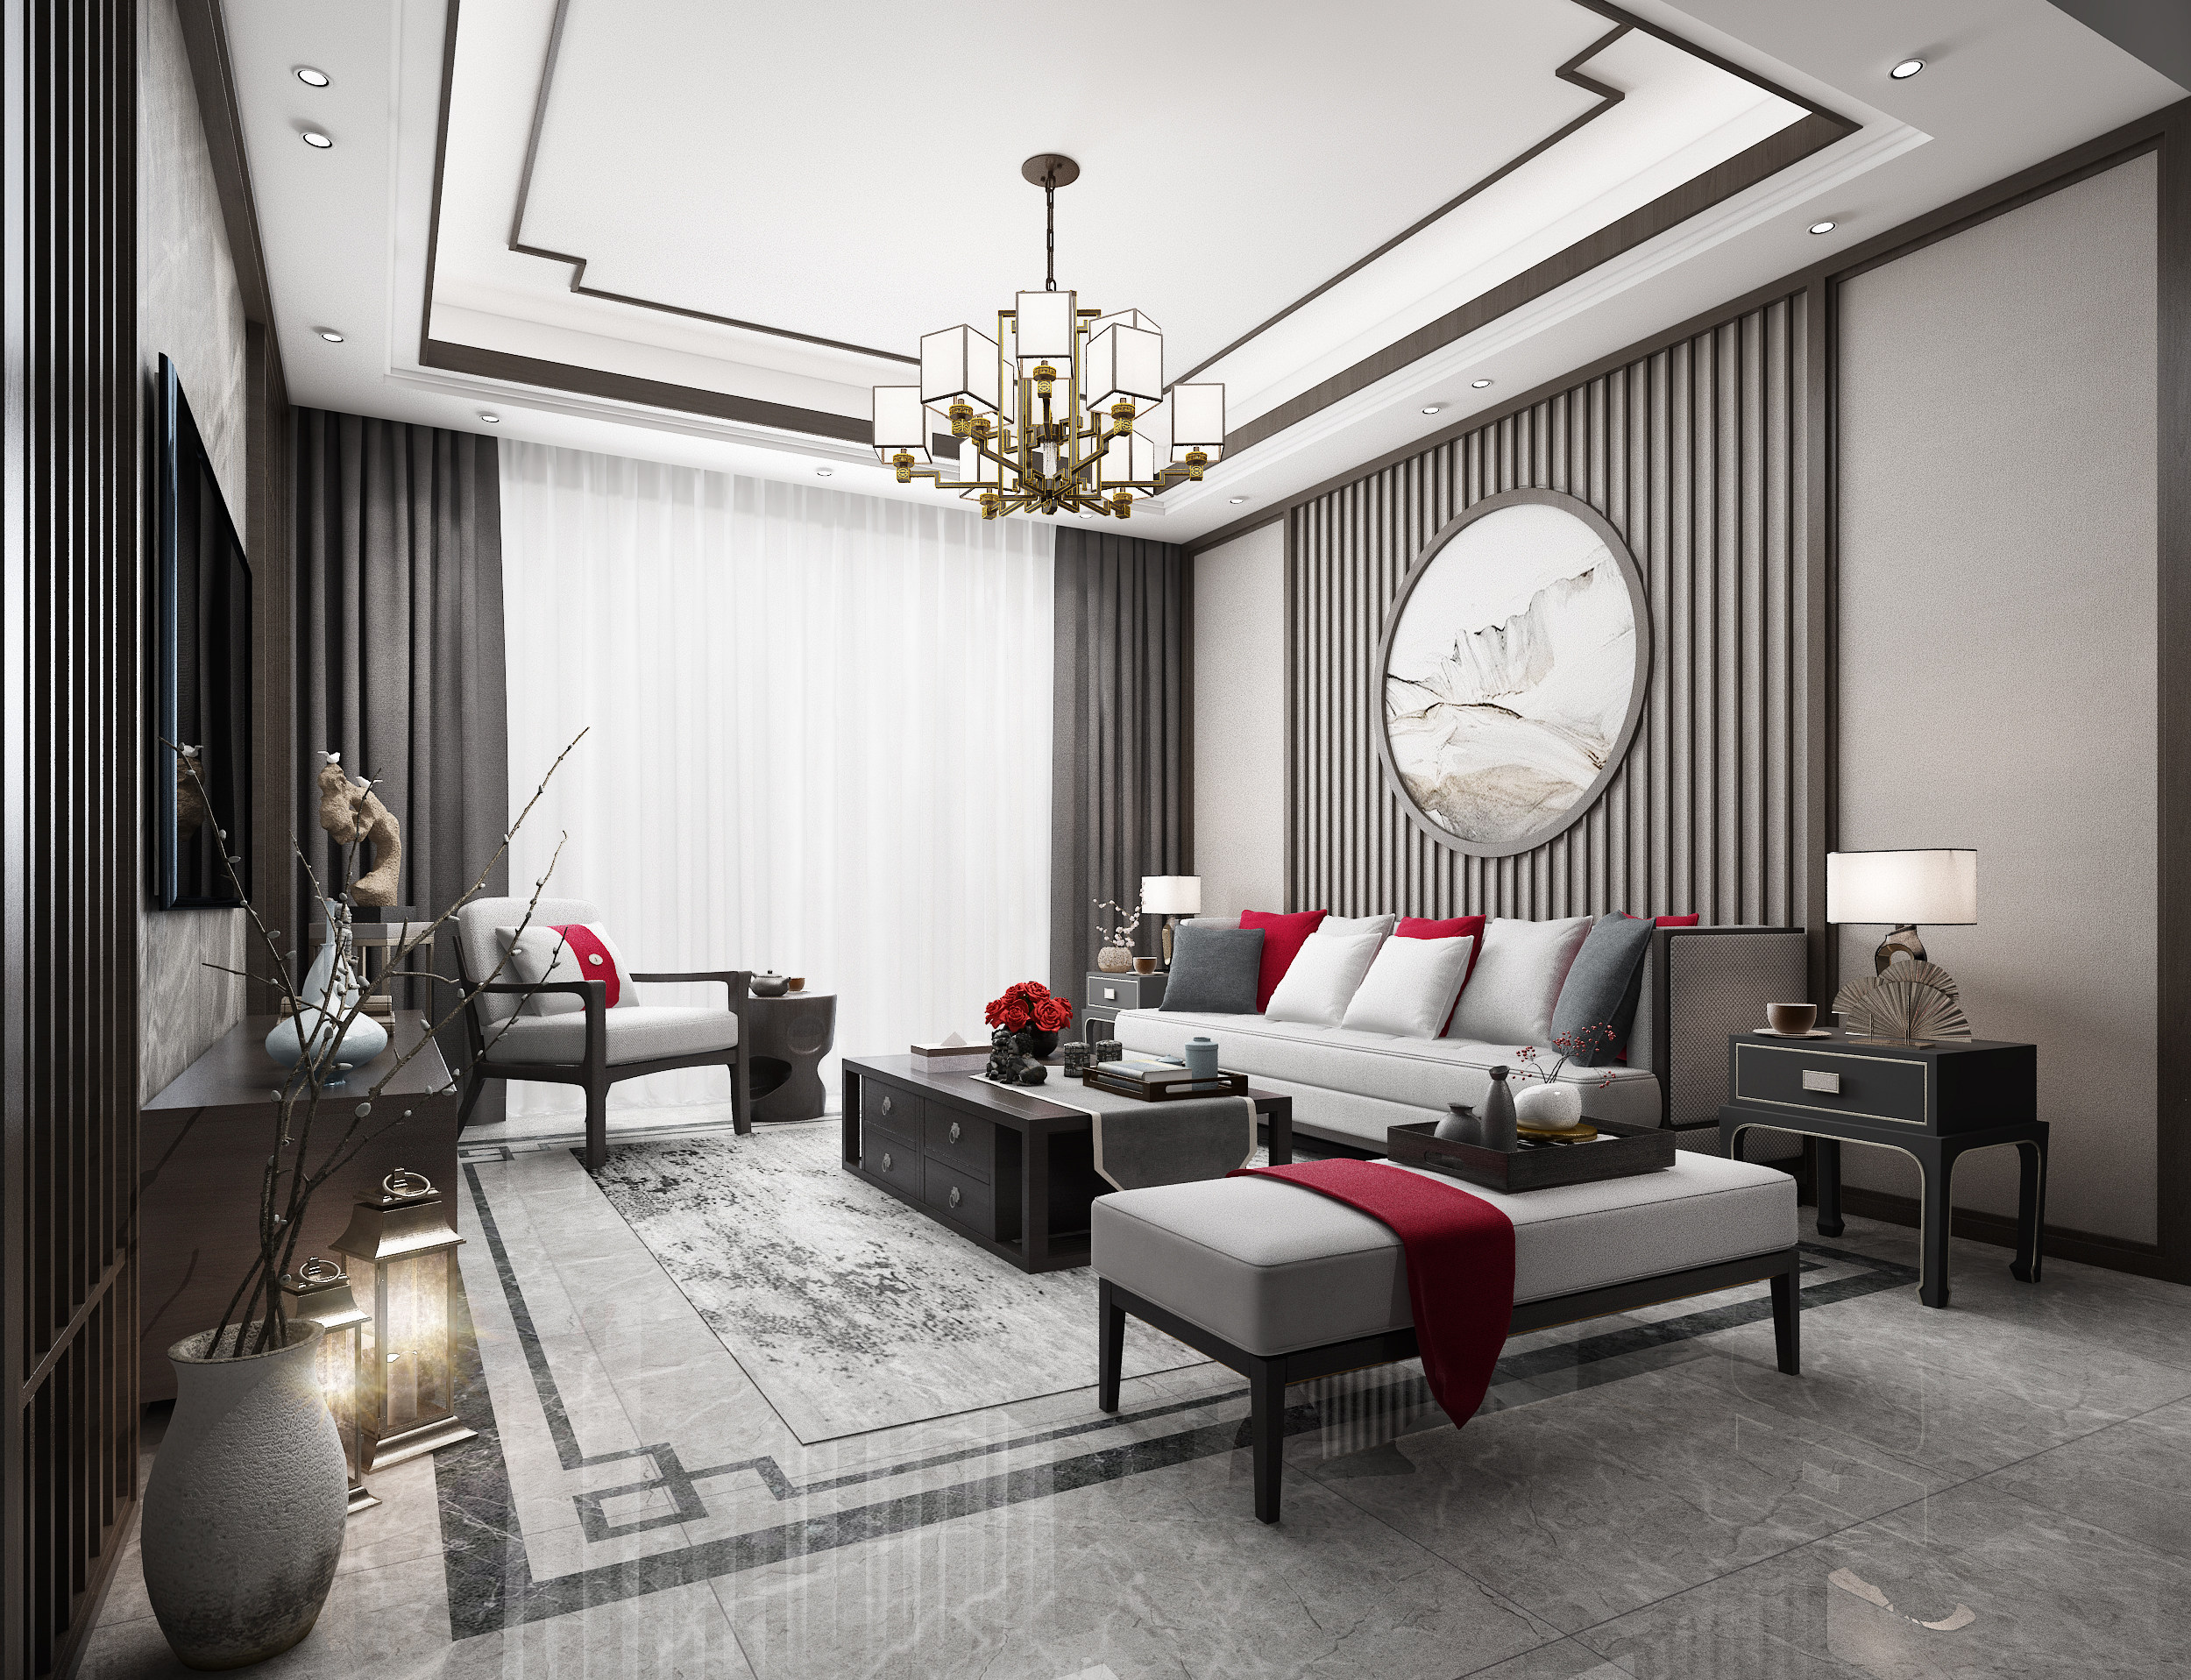 新中式客厅3d模型下载